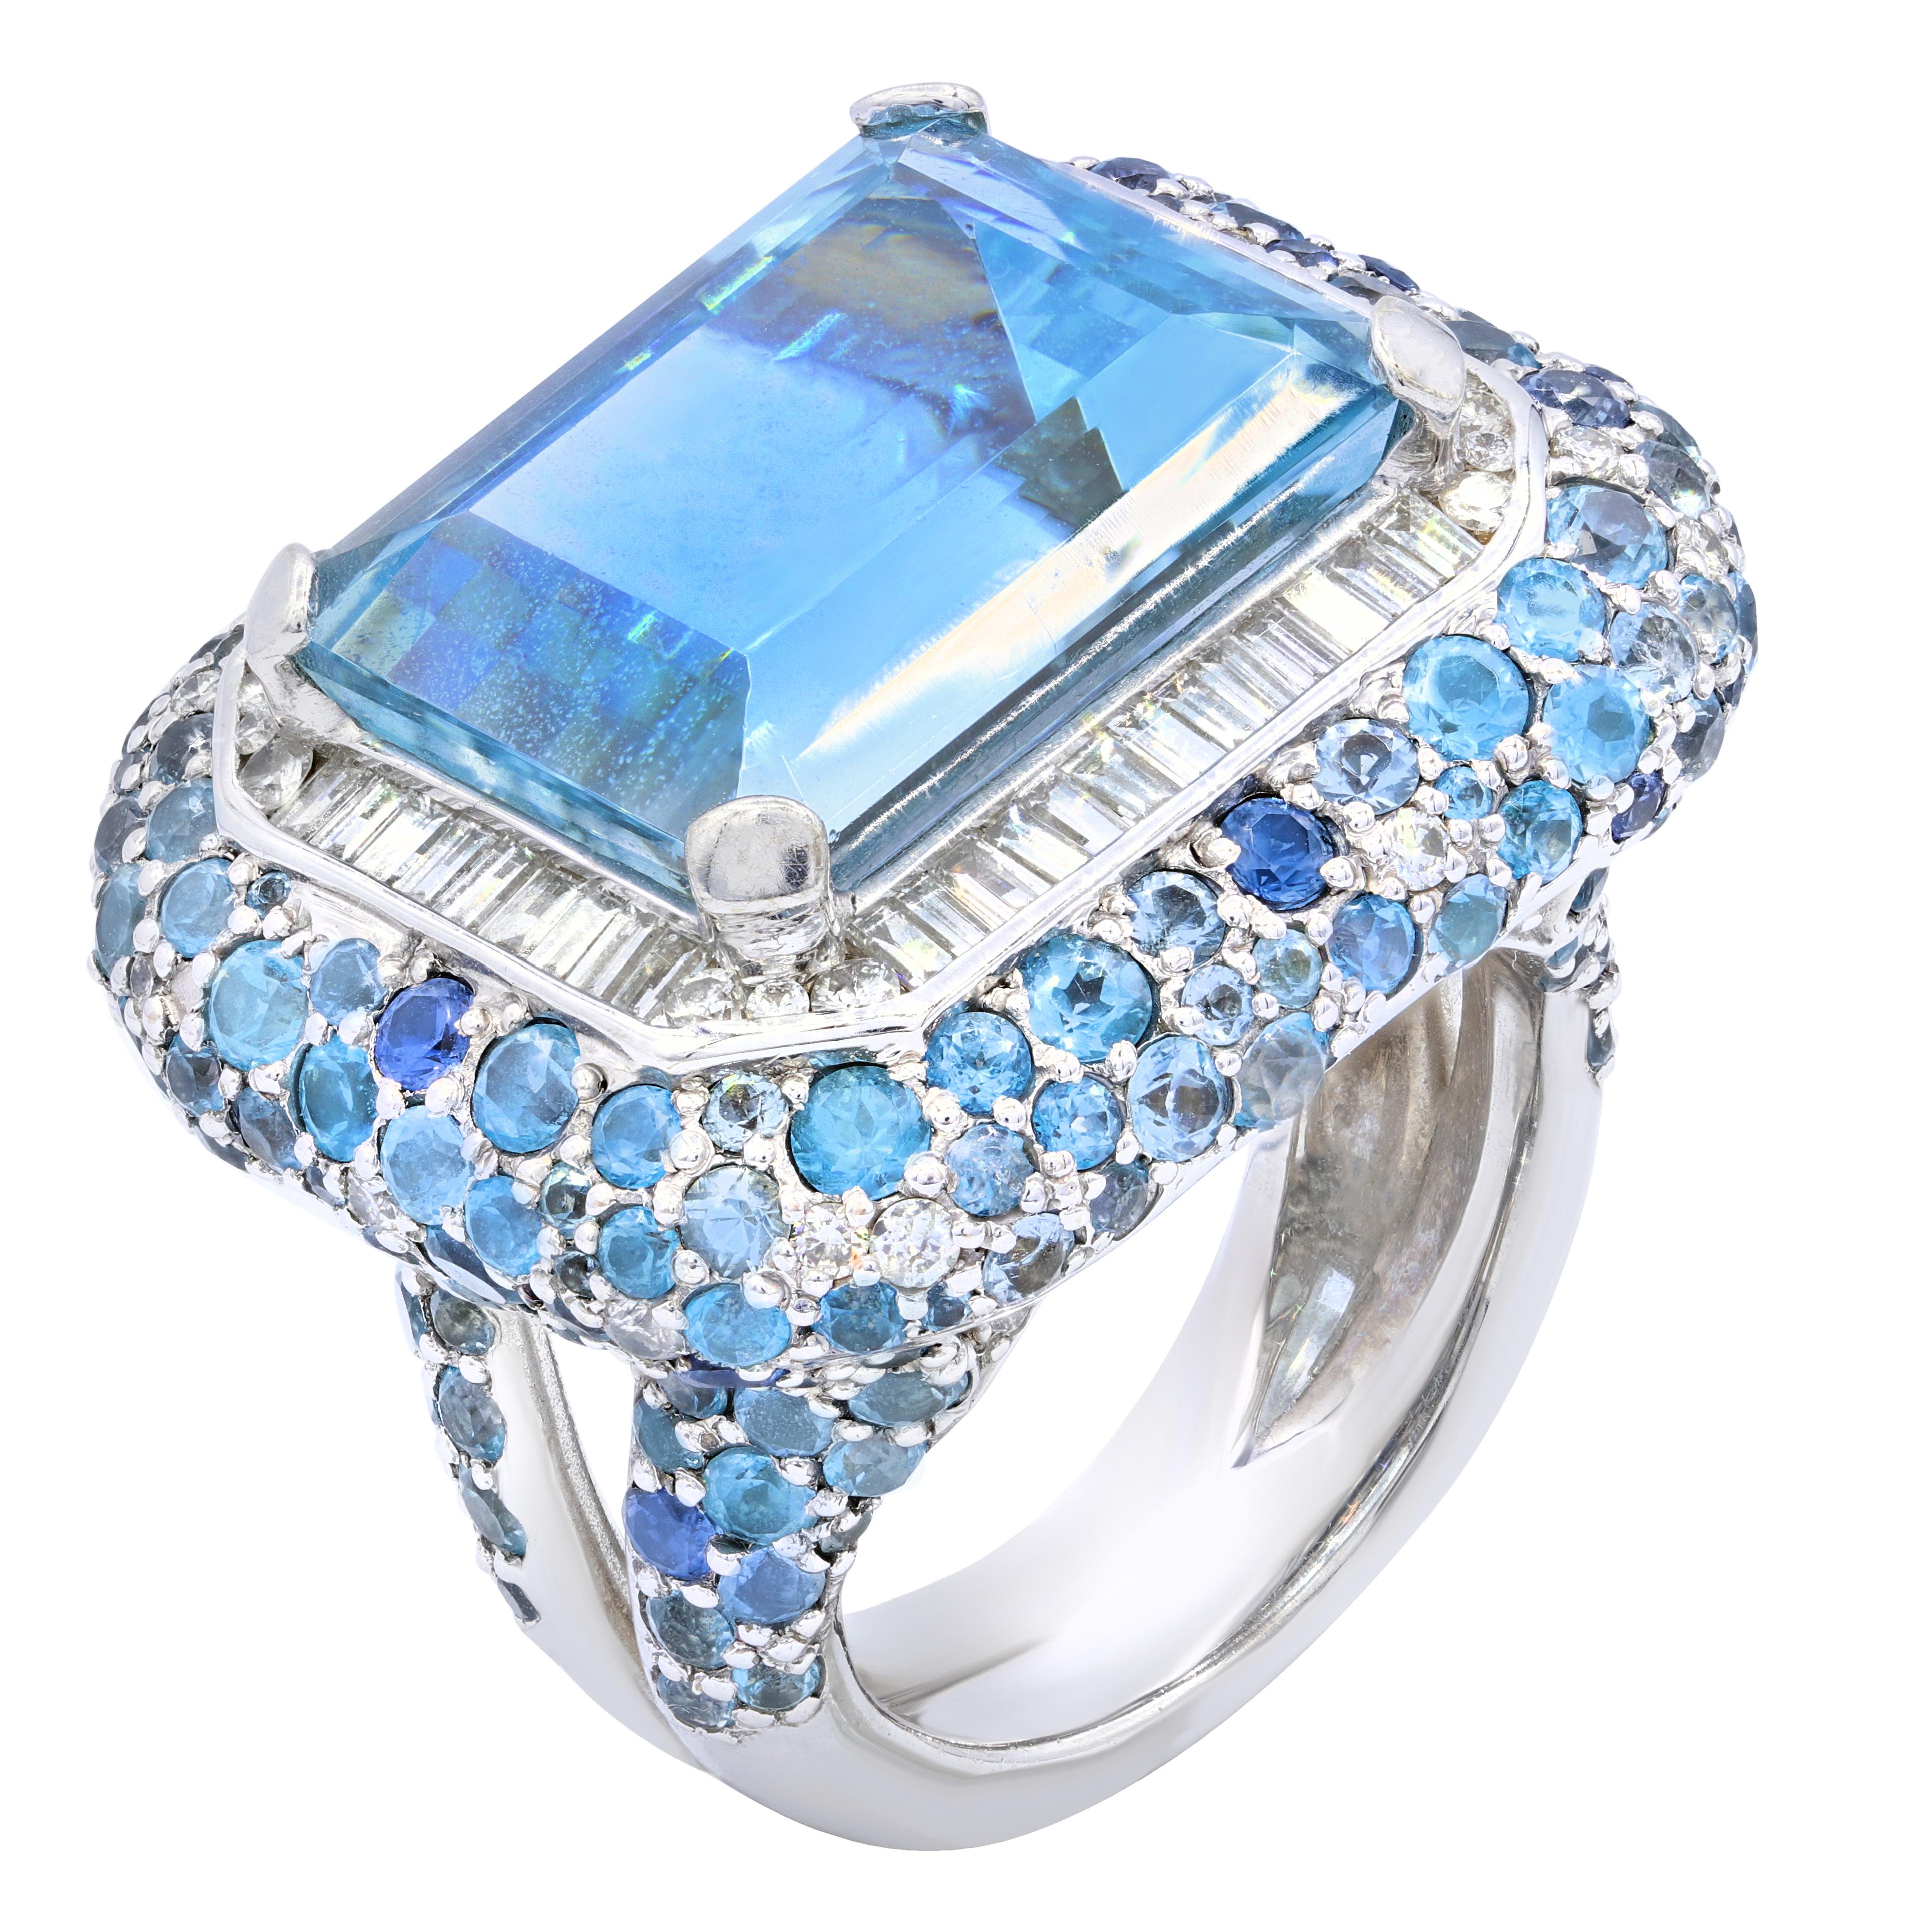 Bague aigue-marine en or blanc et diamant  comprend une pierre centrale aigue-marine de 20,00 carats de taille émeraude, entourée de 1,50 carat de diamants de taille baguette.